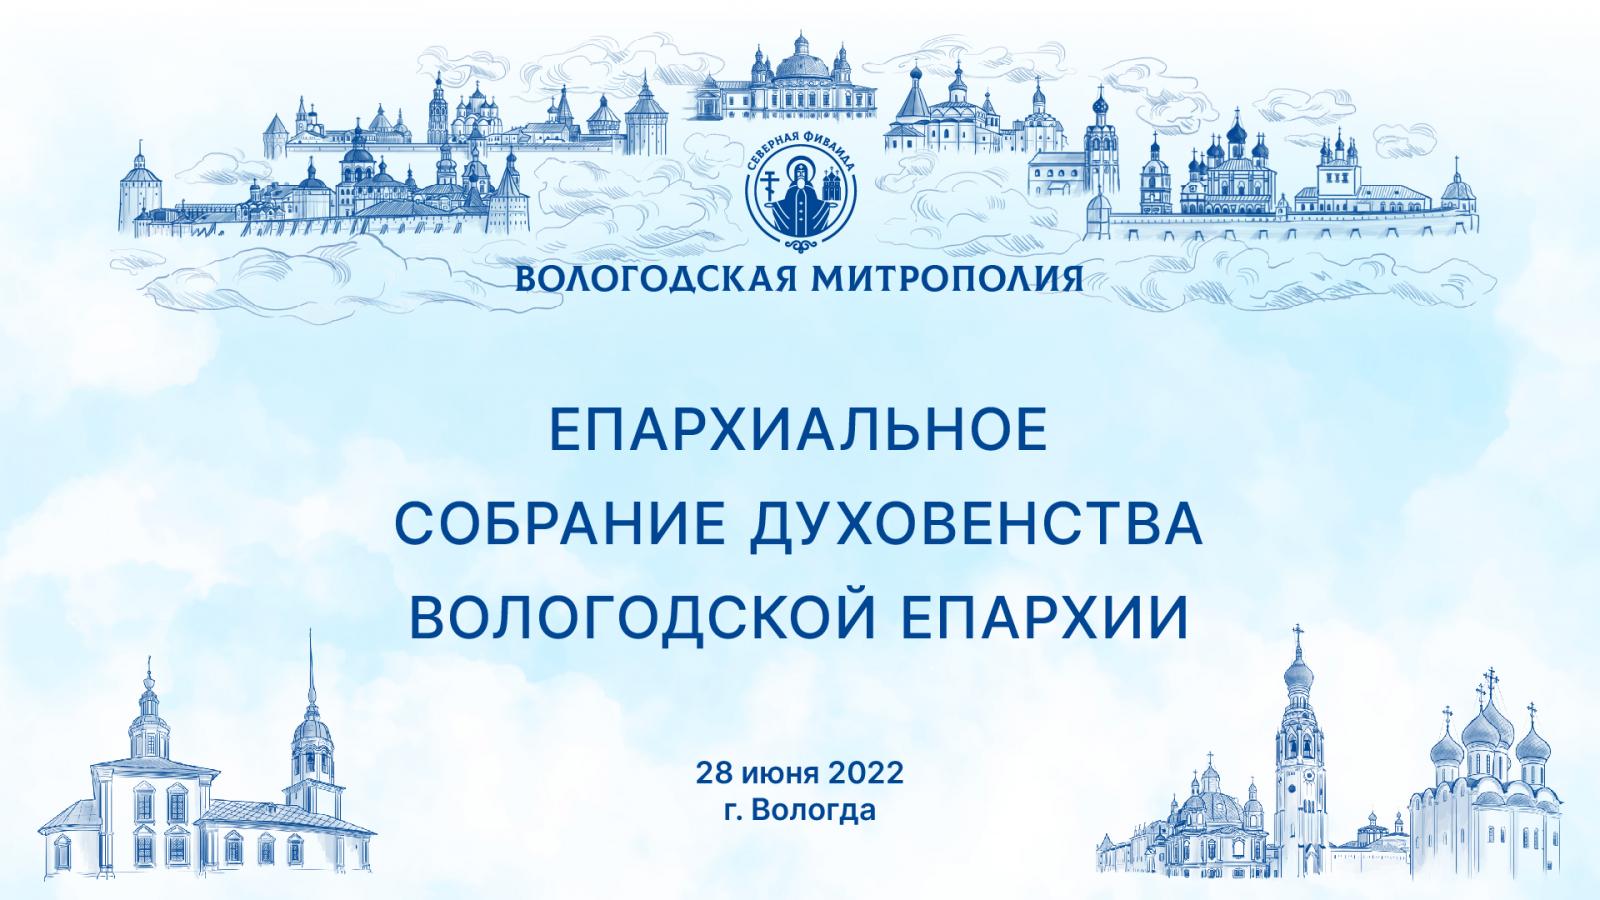 Постановление Епархиального собрания Вологодской епархии